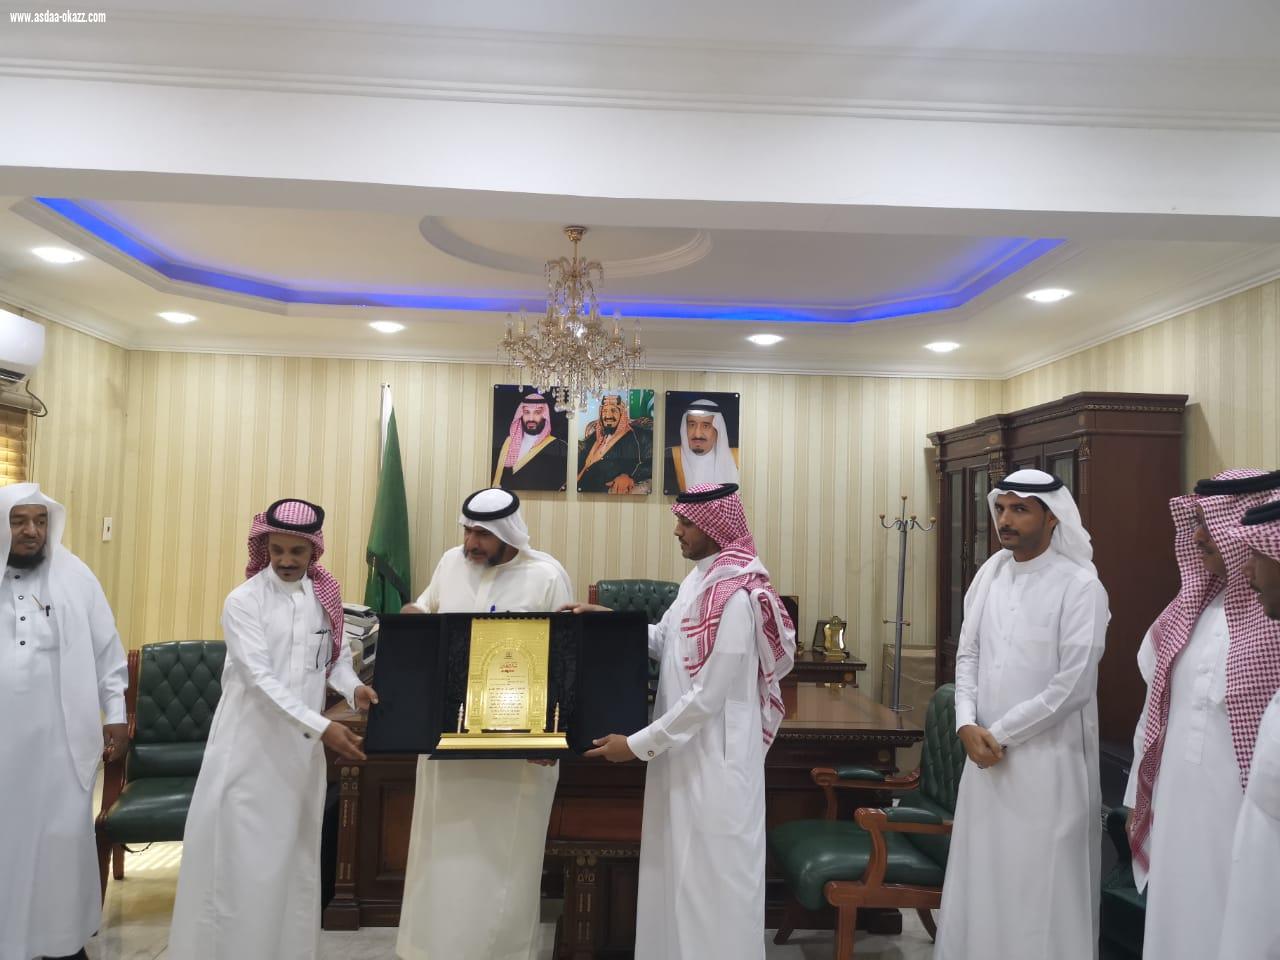 رئيس وأعضاء المجلس البلدي بمحافظة بيش يكرمون زميلهم النهاري